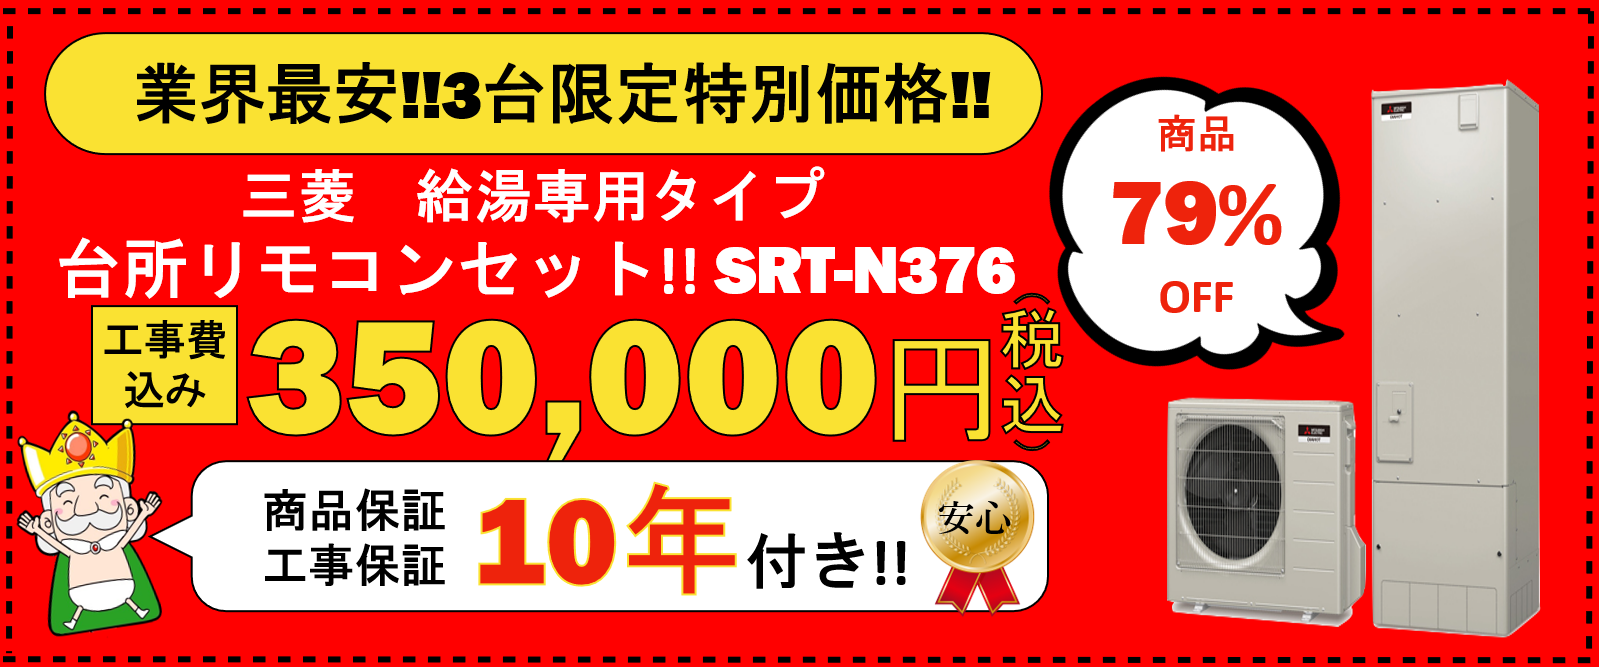 業界最安!!3台限定特別価格!!三菱給湯専用タイプ 台所リモコンセット!!SRT-N376